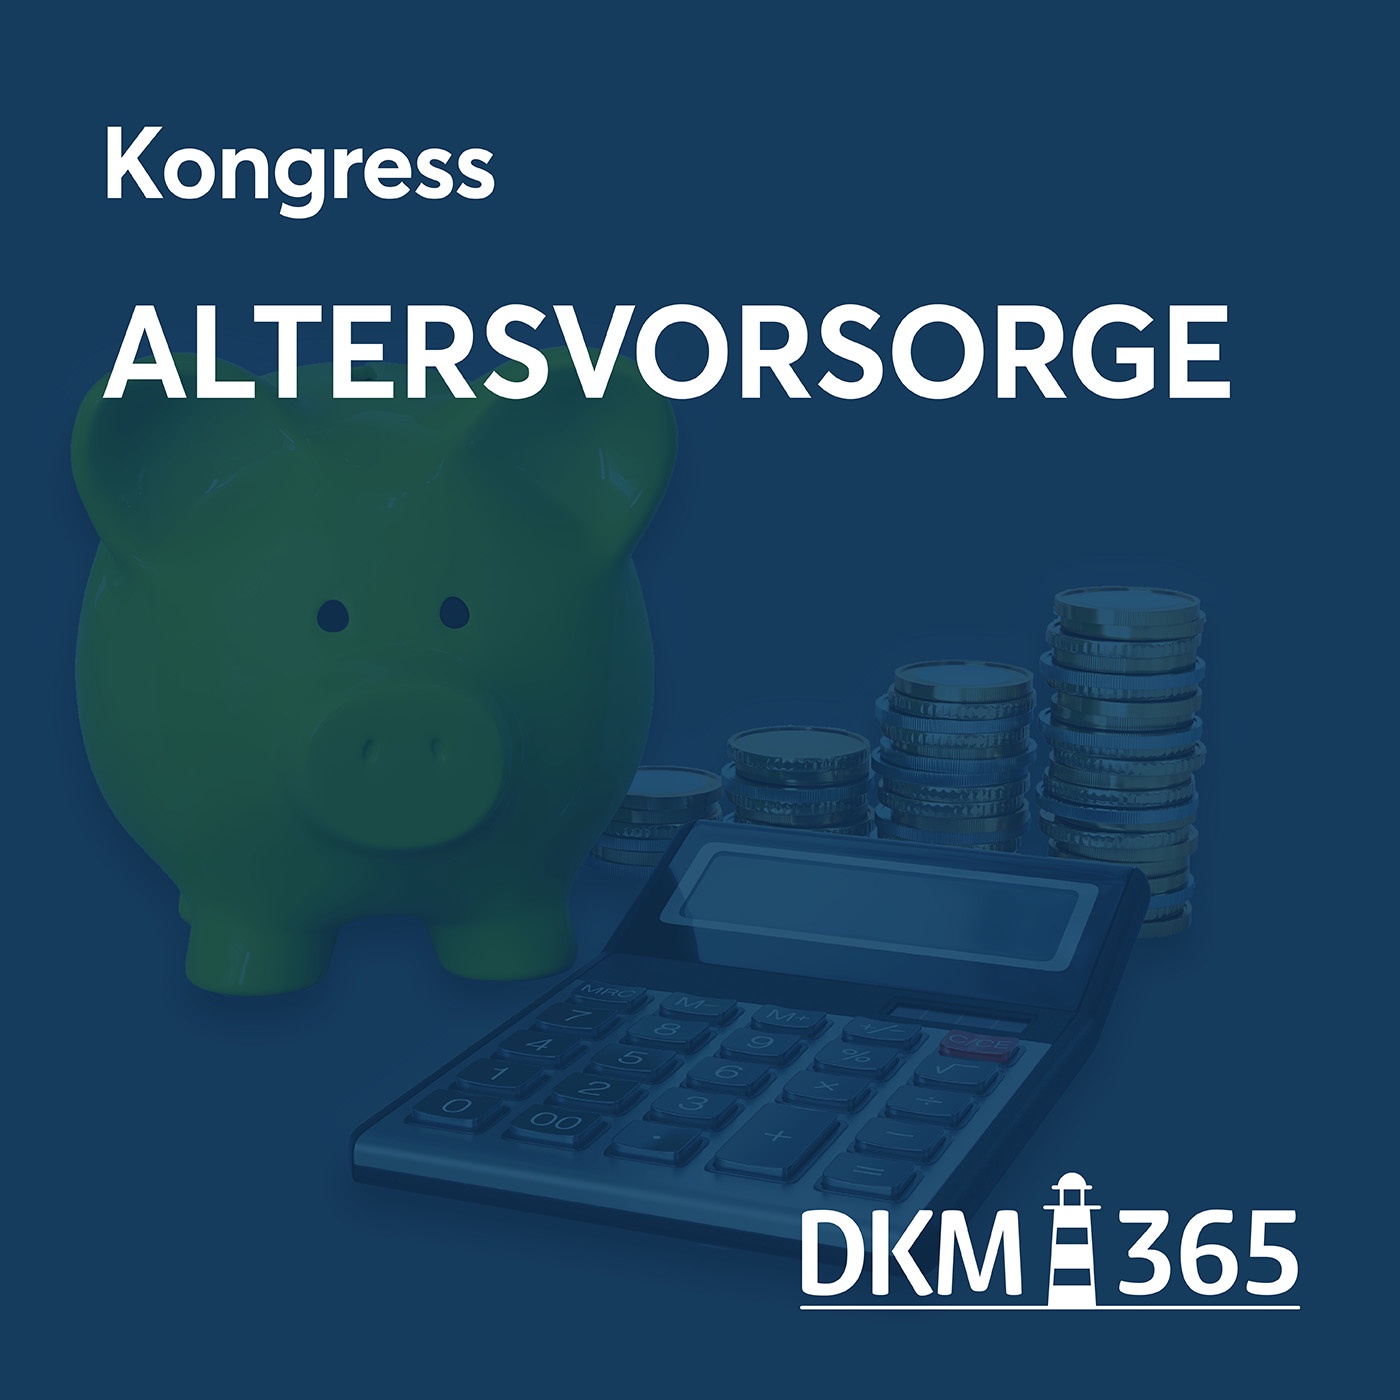 DKM OnStage - Kongress Altersvorsorge mit Dr. Thomas Wiesemann, Björn Bohnhoff und Prof. Michael Hauer